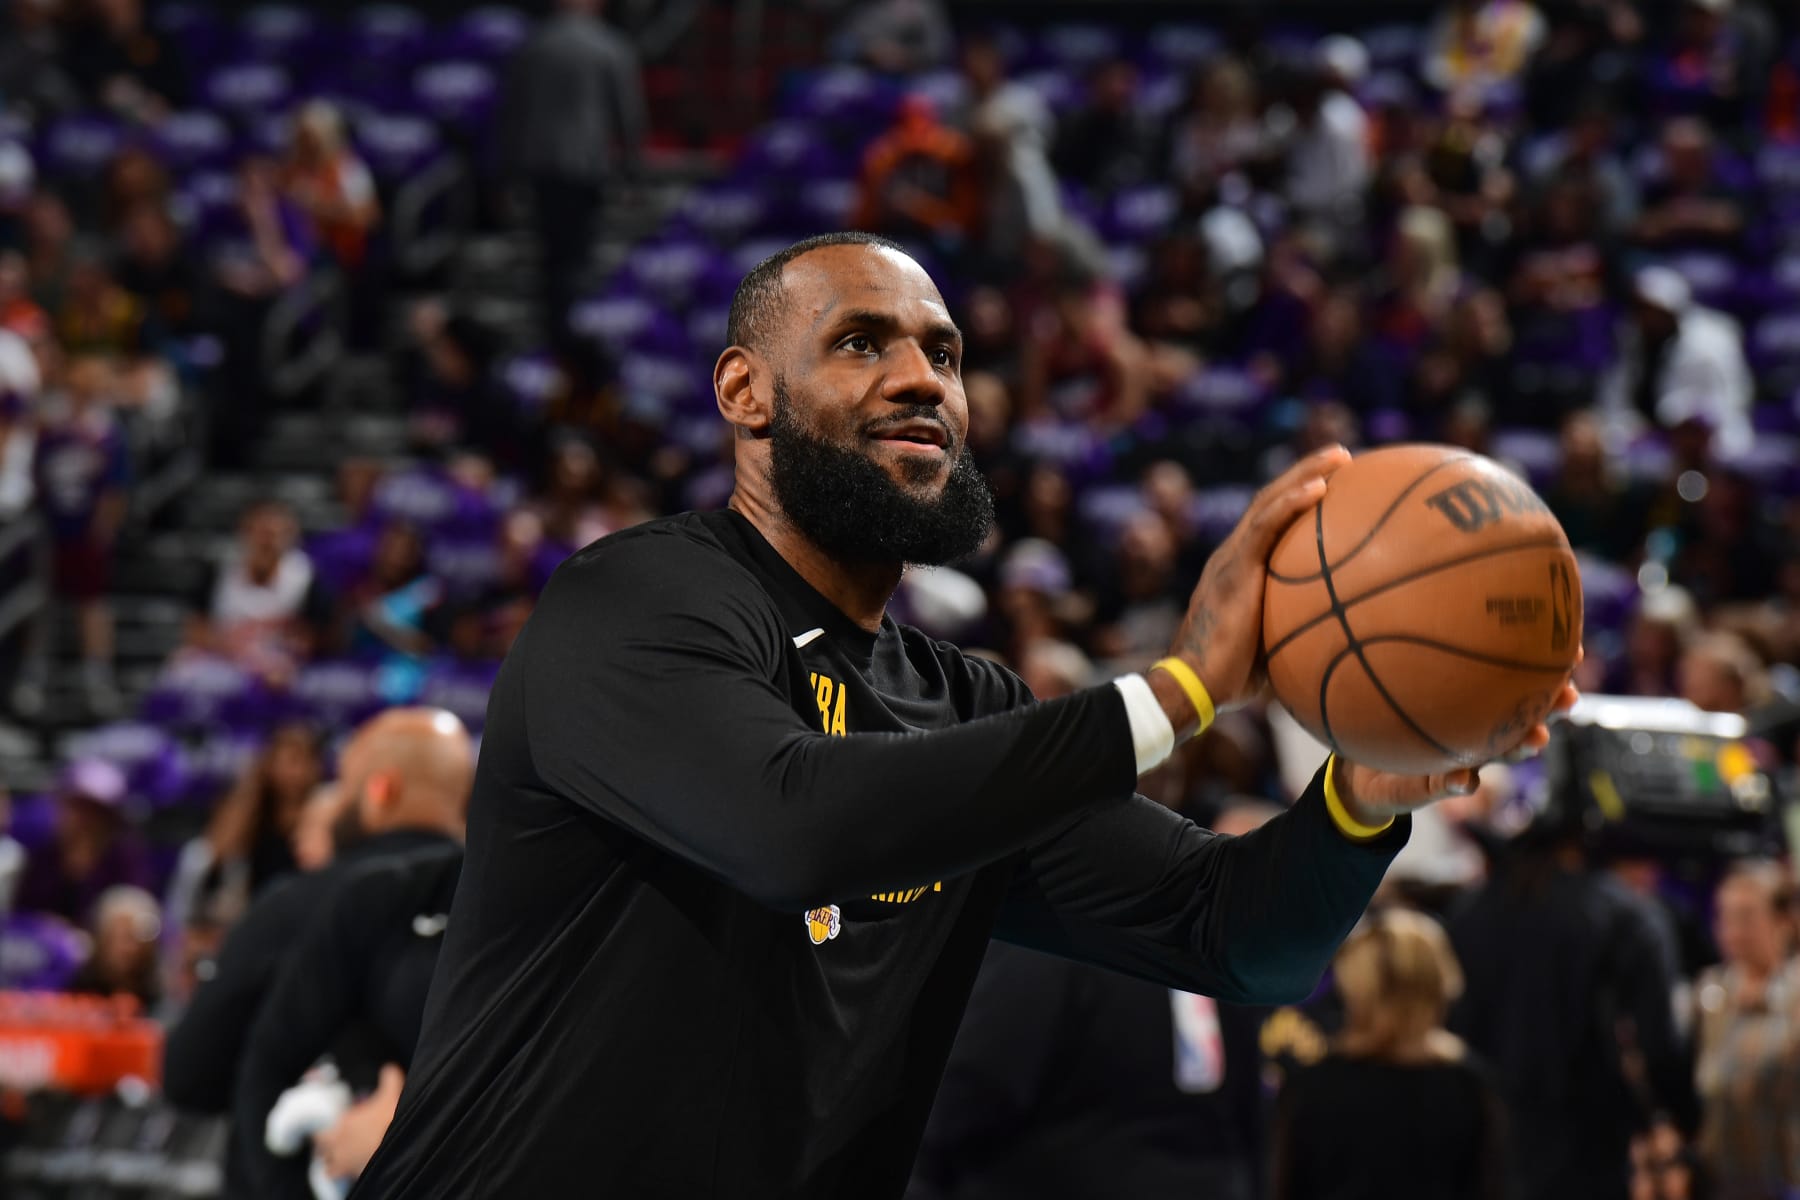 Lakers' LeBron James pokes fun at Michigan amid ongoing sign